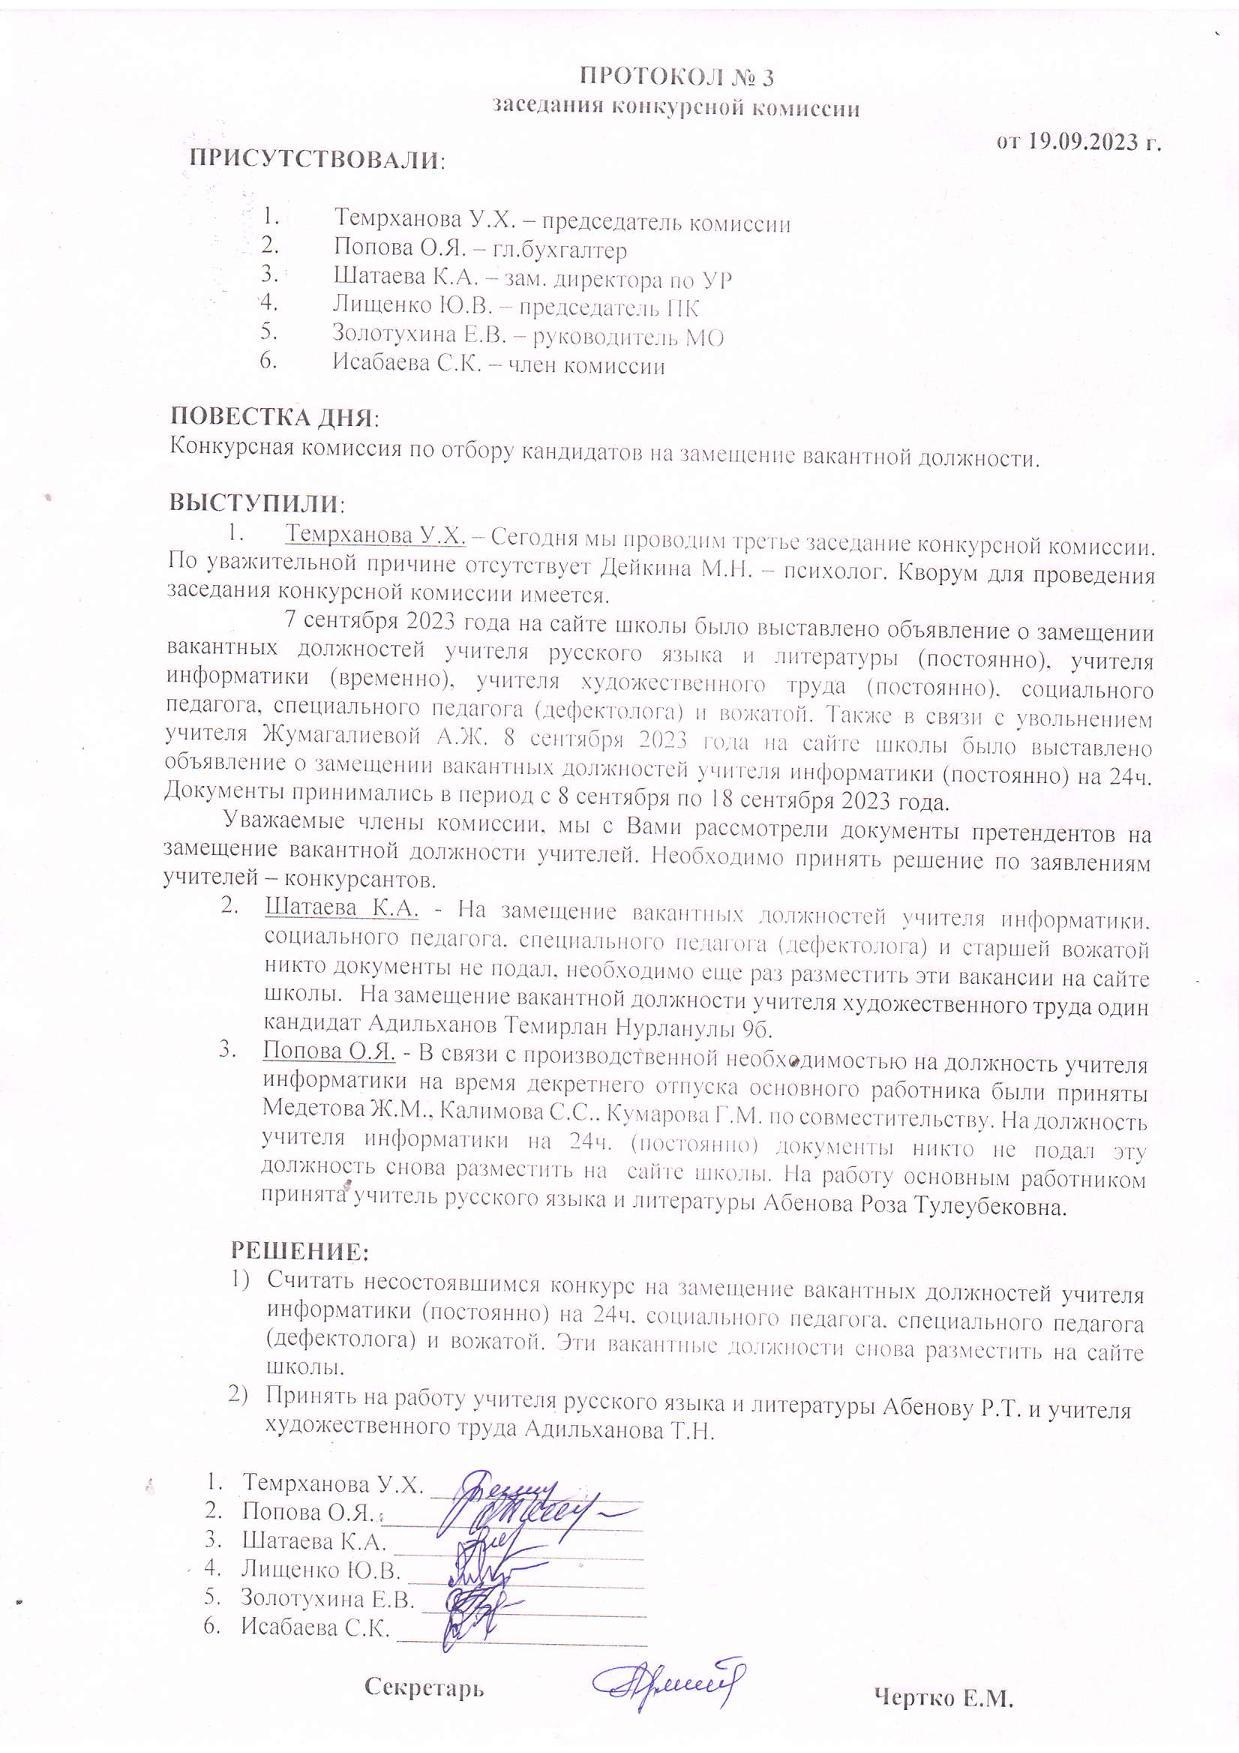 ПРОТОКОЛ №3 заседания конкурсной комиссии от 19.09.2023